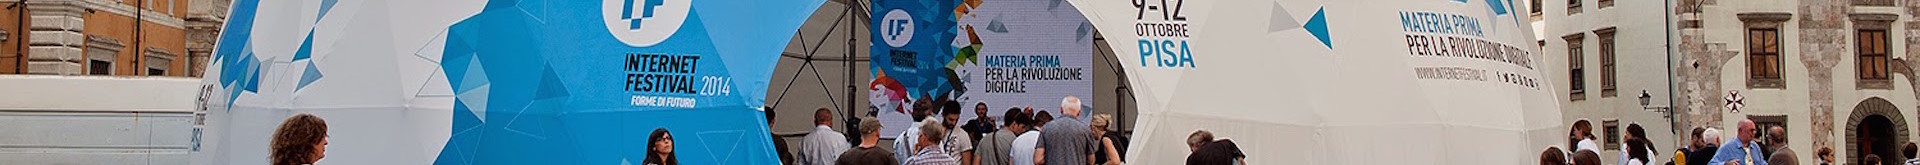 Internet Festival, anticipazioni sull’edizione 2015